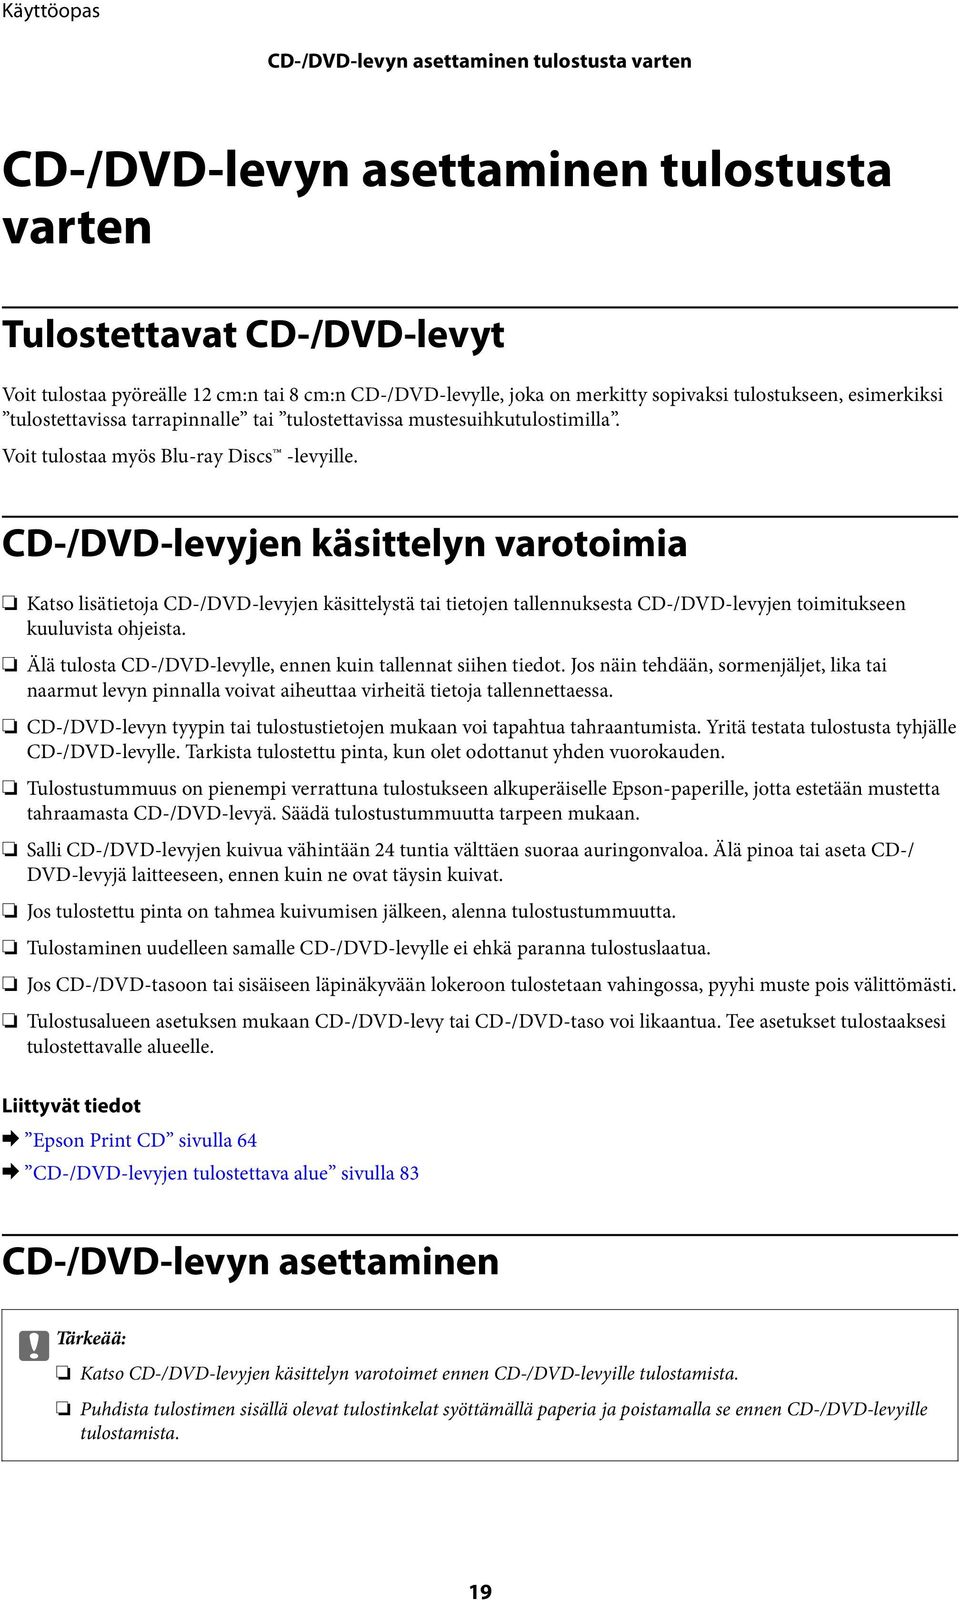 CD-/DVD-levyjen käsittelyn varotoimia Katso lisätietoja CD-/DVD-levyjen käsittelystä tai tietojen tallennuksesta CD-/DVD-levyjen toimitukseen kuuluvista ohjeista.